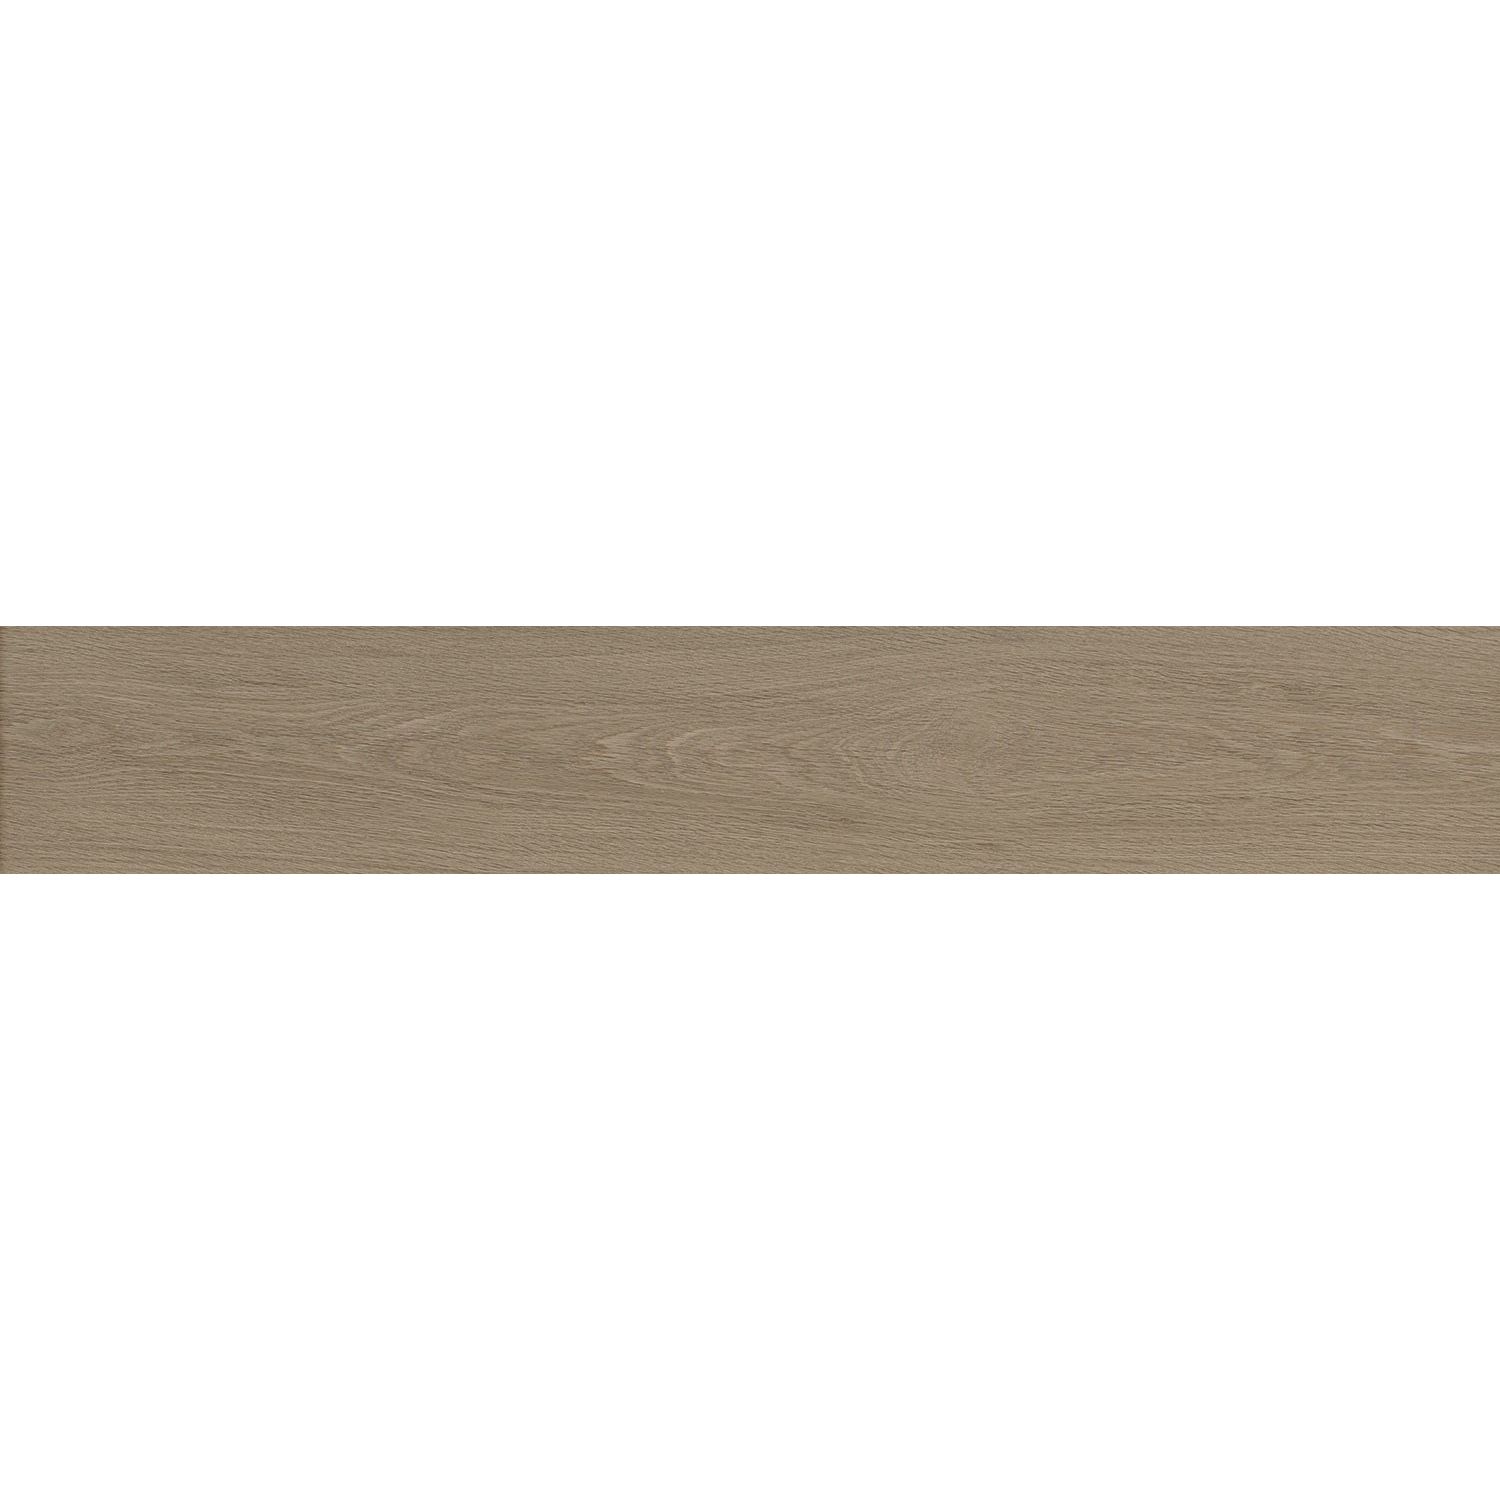 Настенная плитка Kerama Marazzi Ламбро коричневый обрезной 31007R 20х120 см